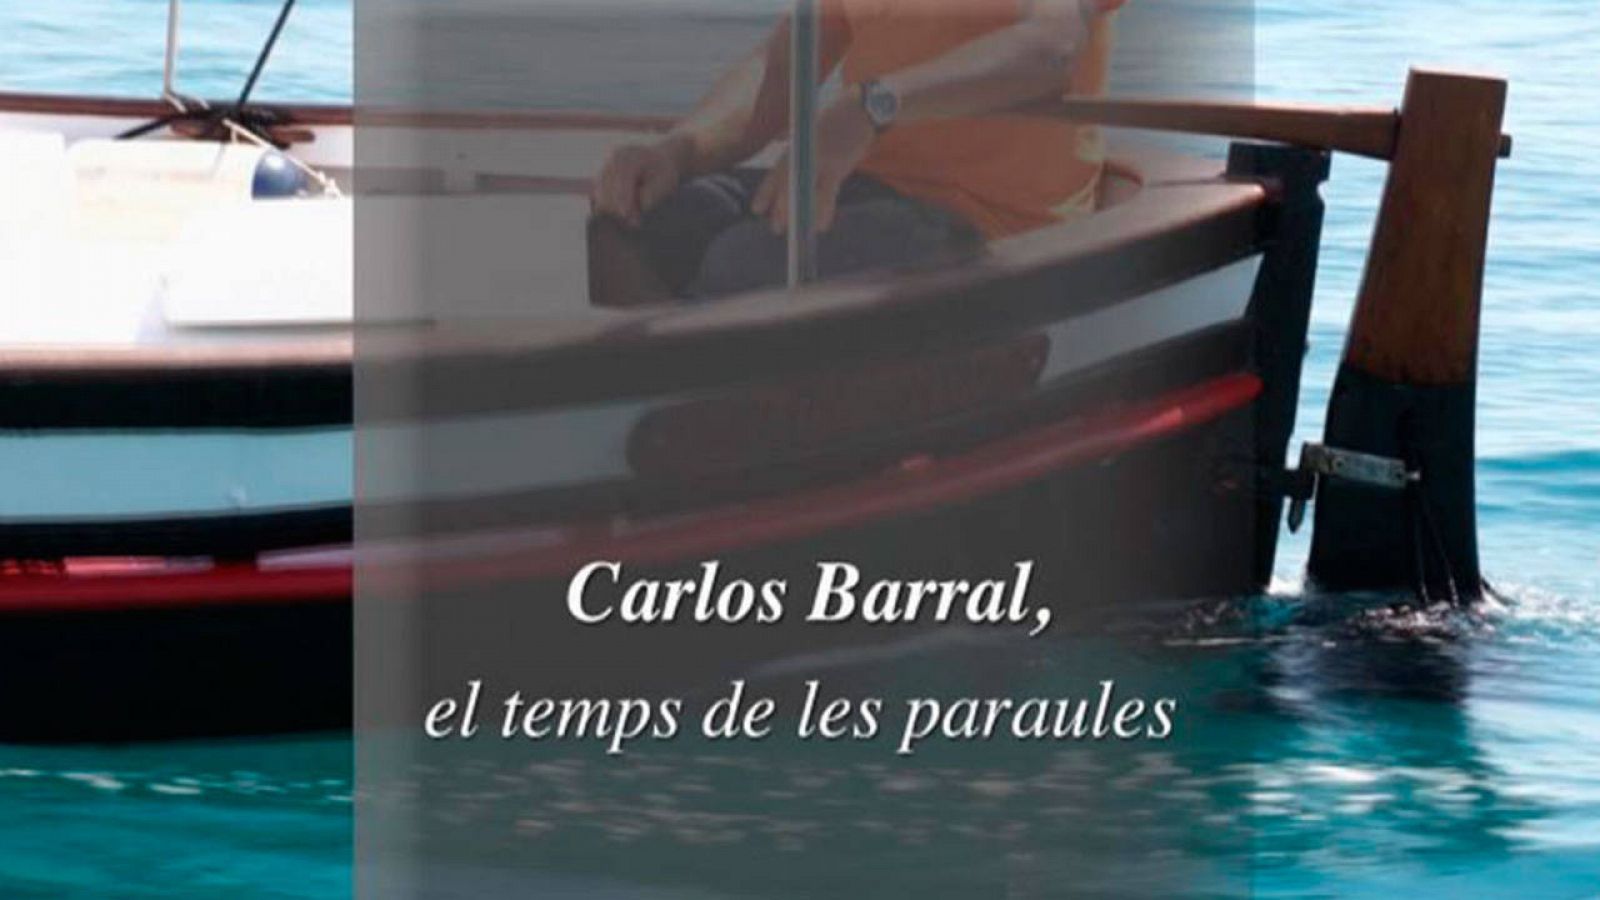 "Carlos Barral, el temps de les paraules"